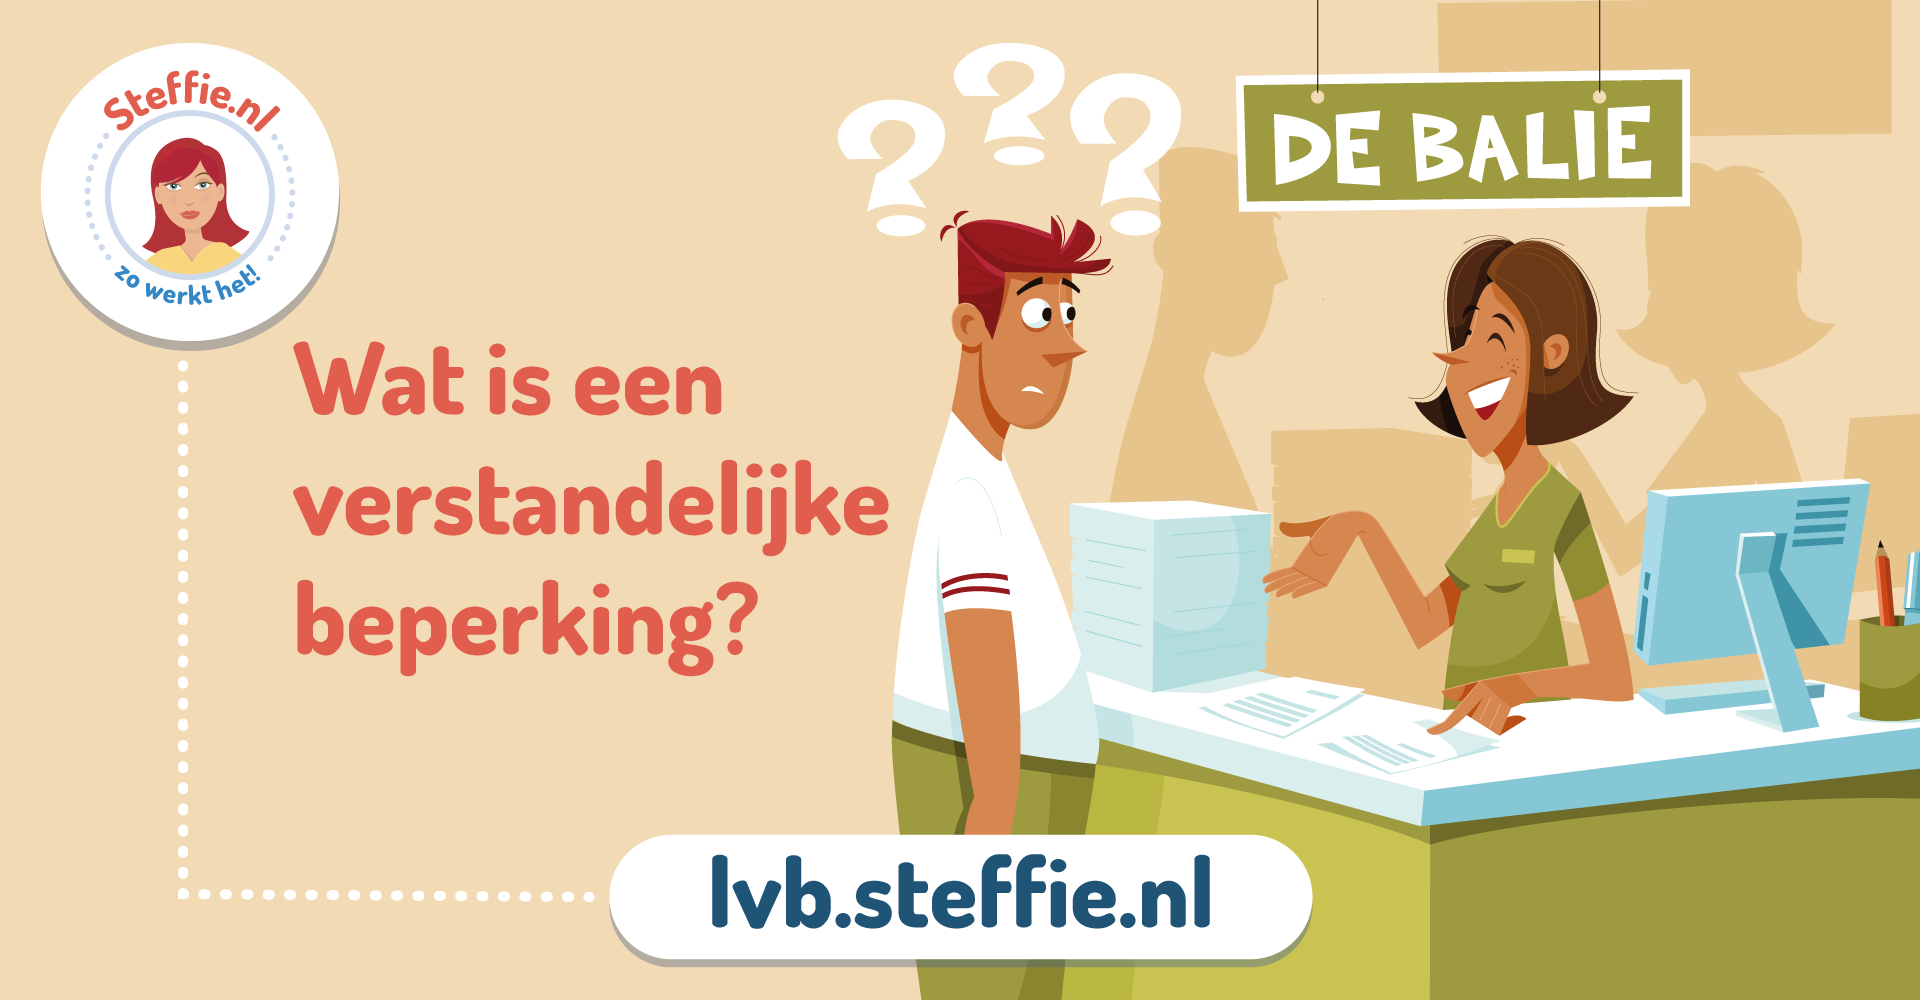 Steffie legt op Lvb.Steffie.nl uit wat een verstandelijke beperking is en hoe je daarmee om kunt gaan.